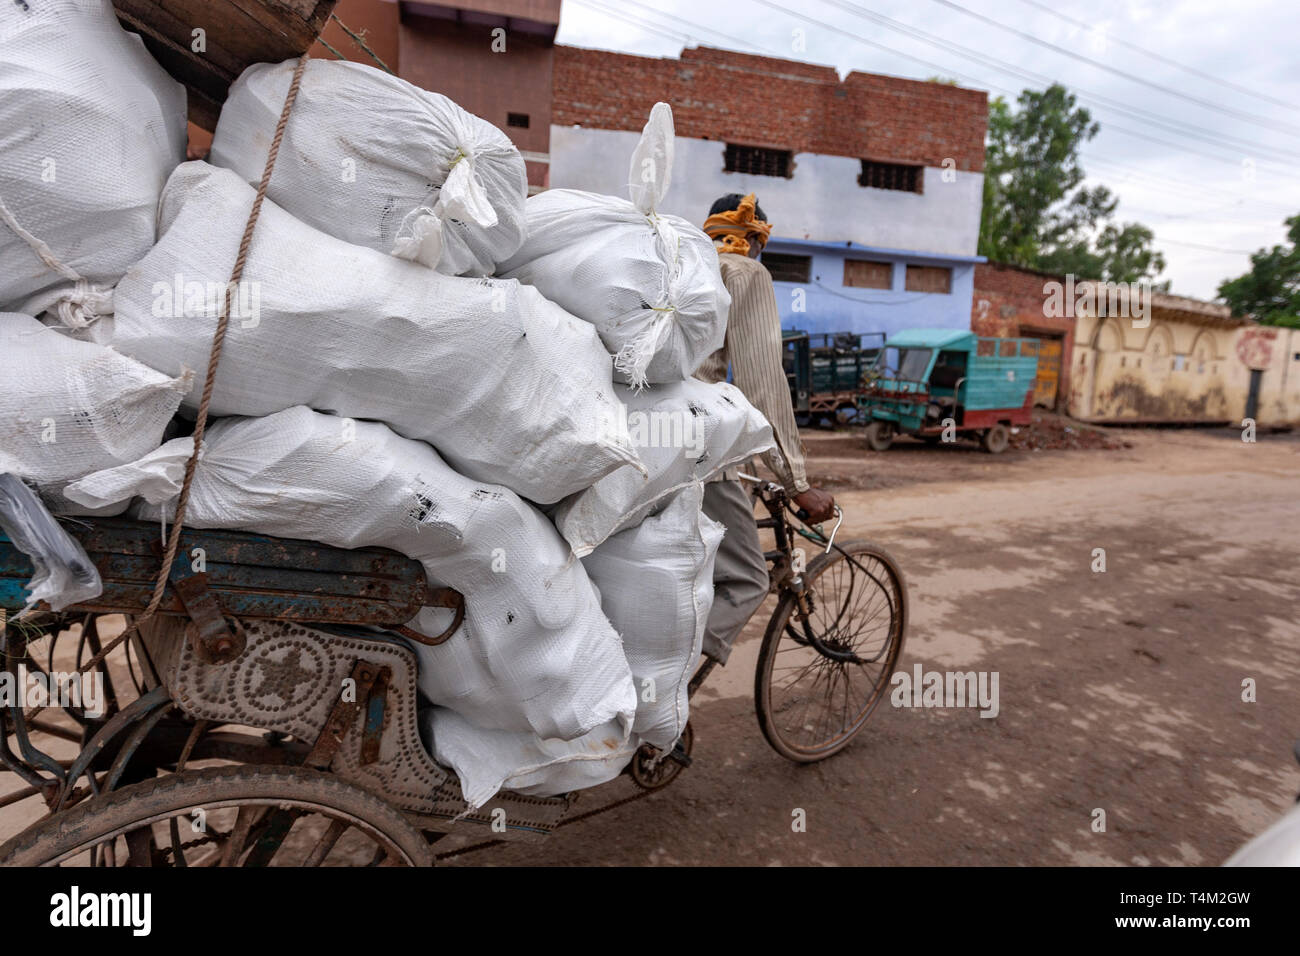 Indische Cycle rickshaw Transport schwerer Güter, Uttar Pradesh, Indien Stockfoto